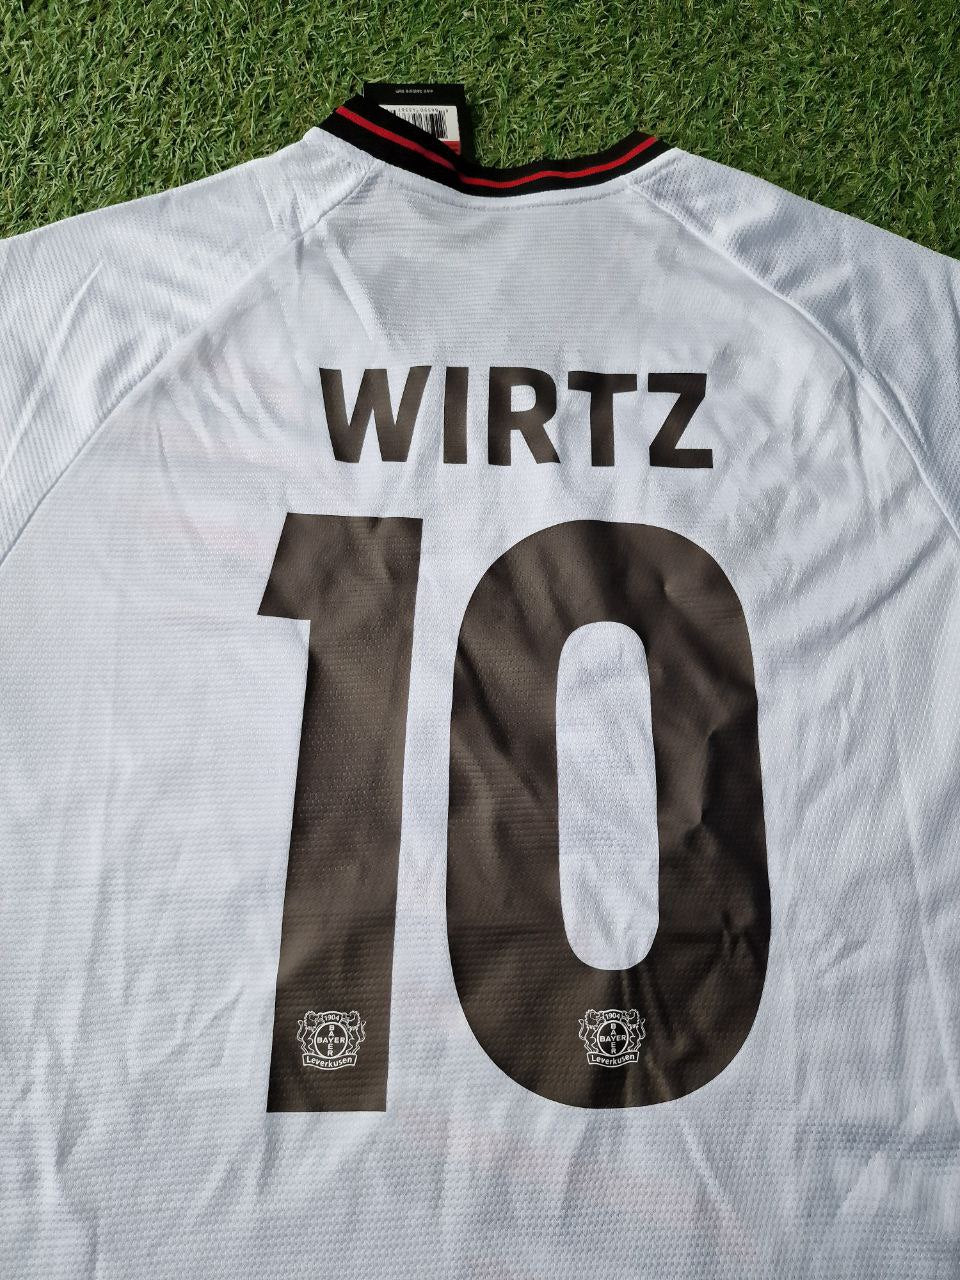 Florian Wirtz Bayer Leverkusen Football Jersey